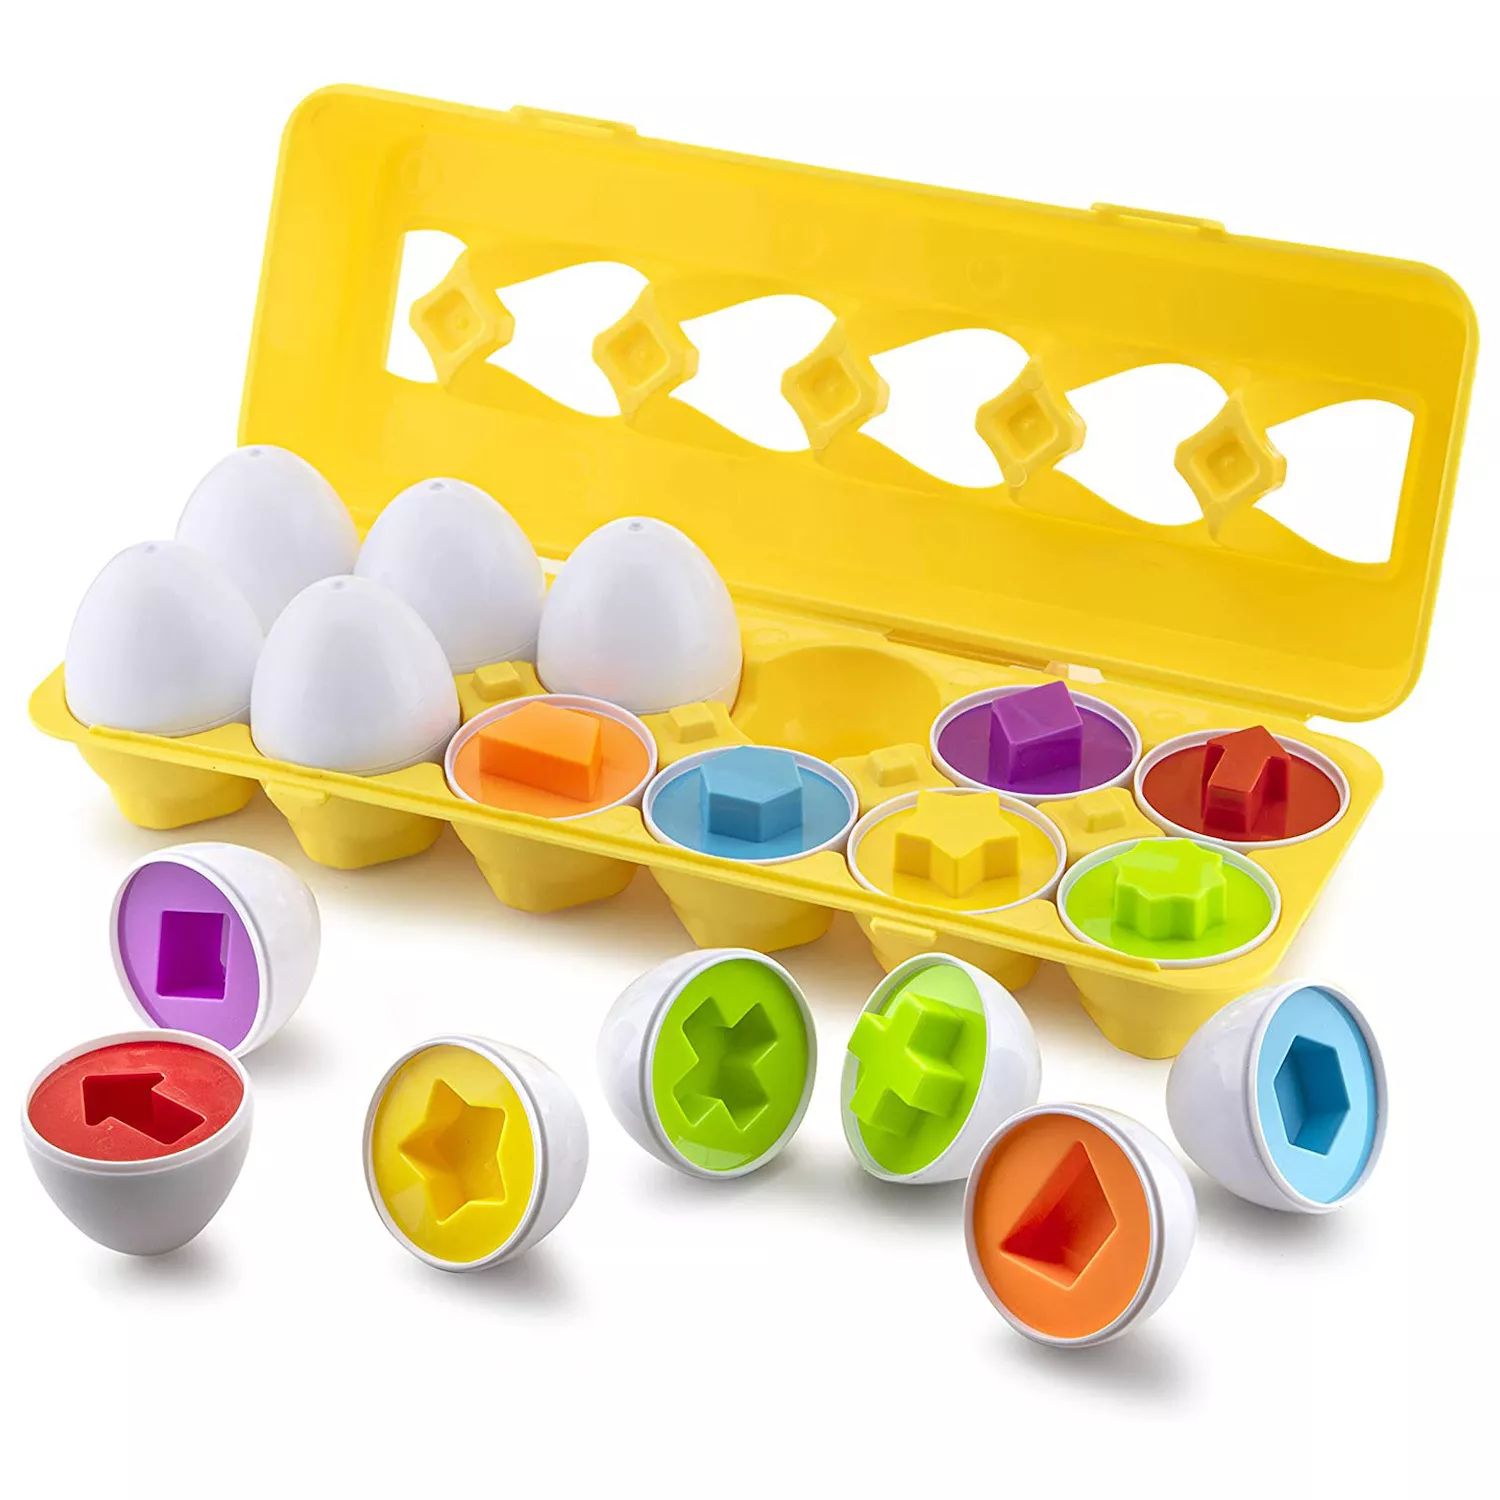 Egg toys